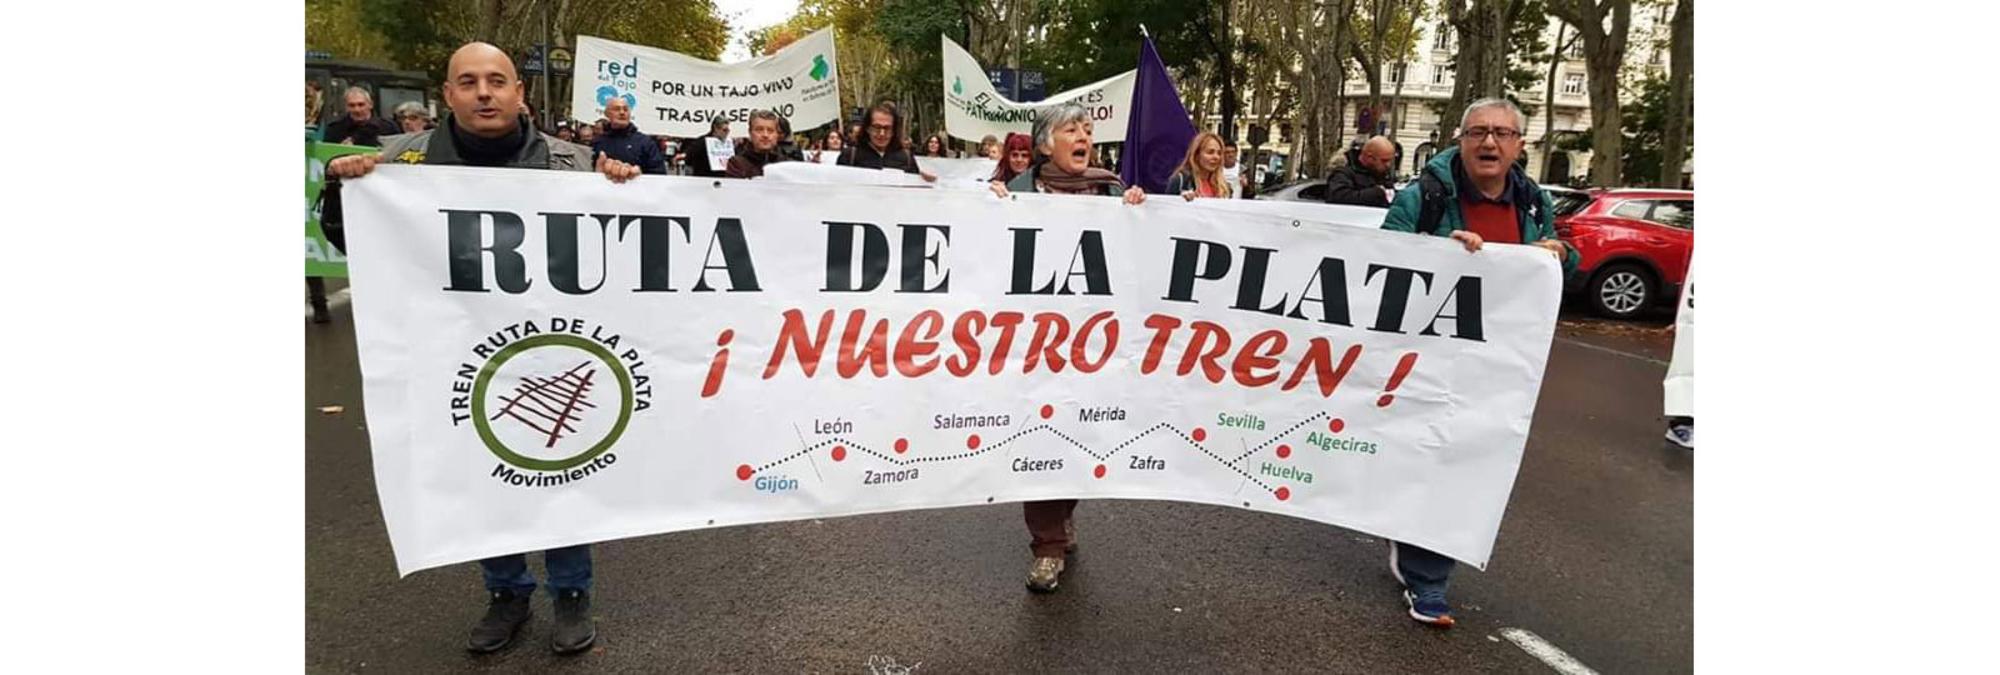 Cortejo de Ruta de la Plata en la manifestación del sábado 27 de octubre en Madrid.